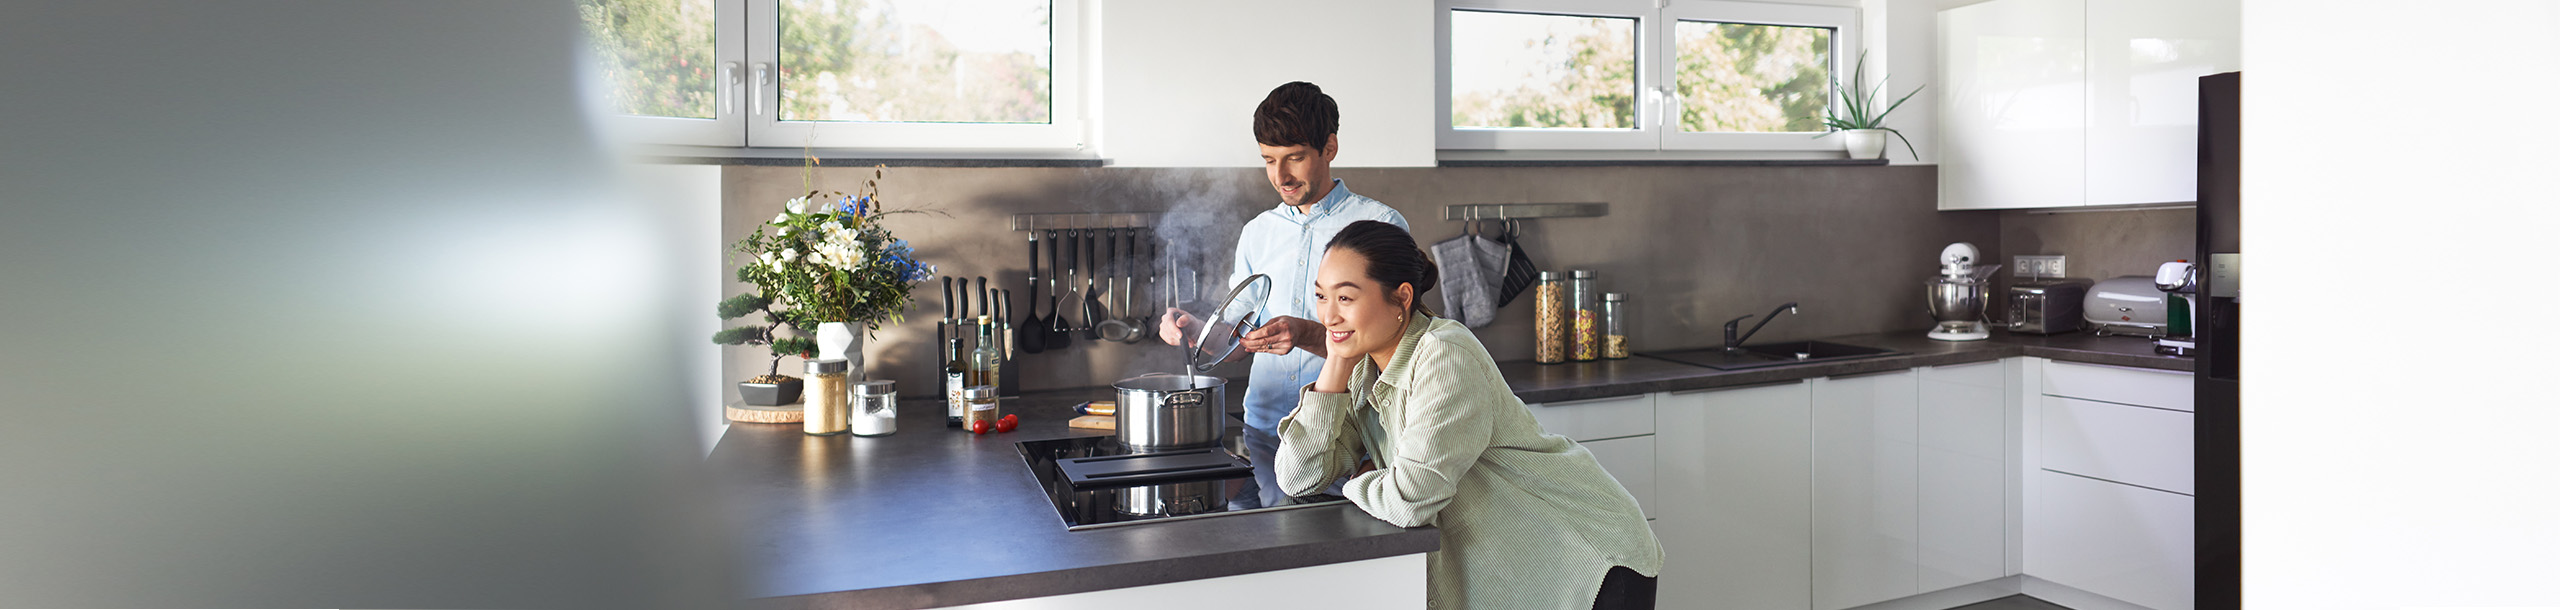 Junger Mann und junge Frau in moderner Küche beim Kochen